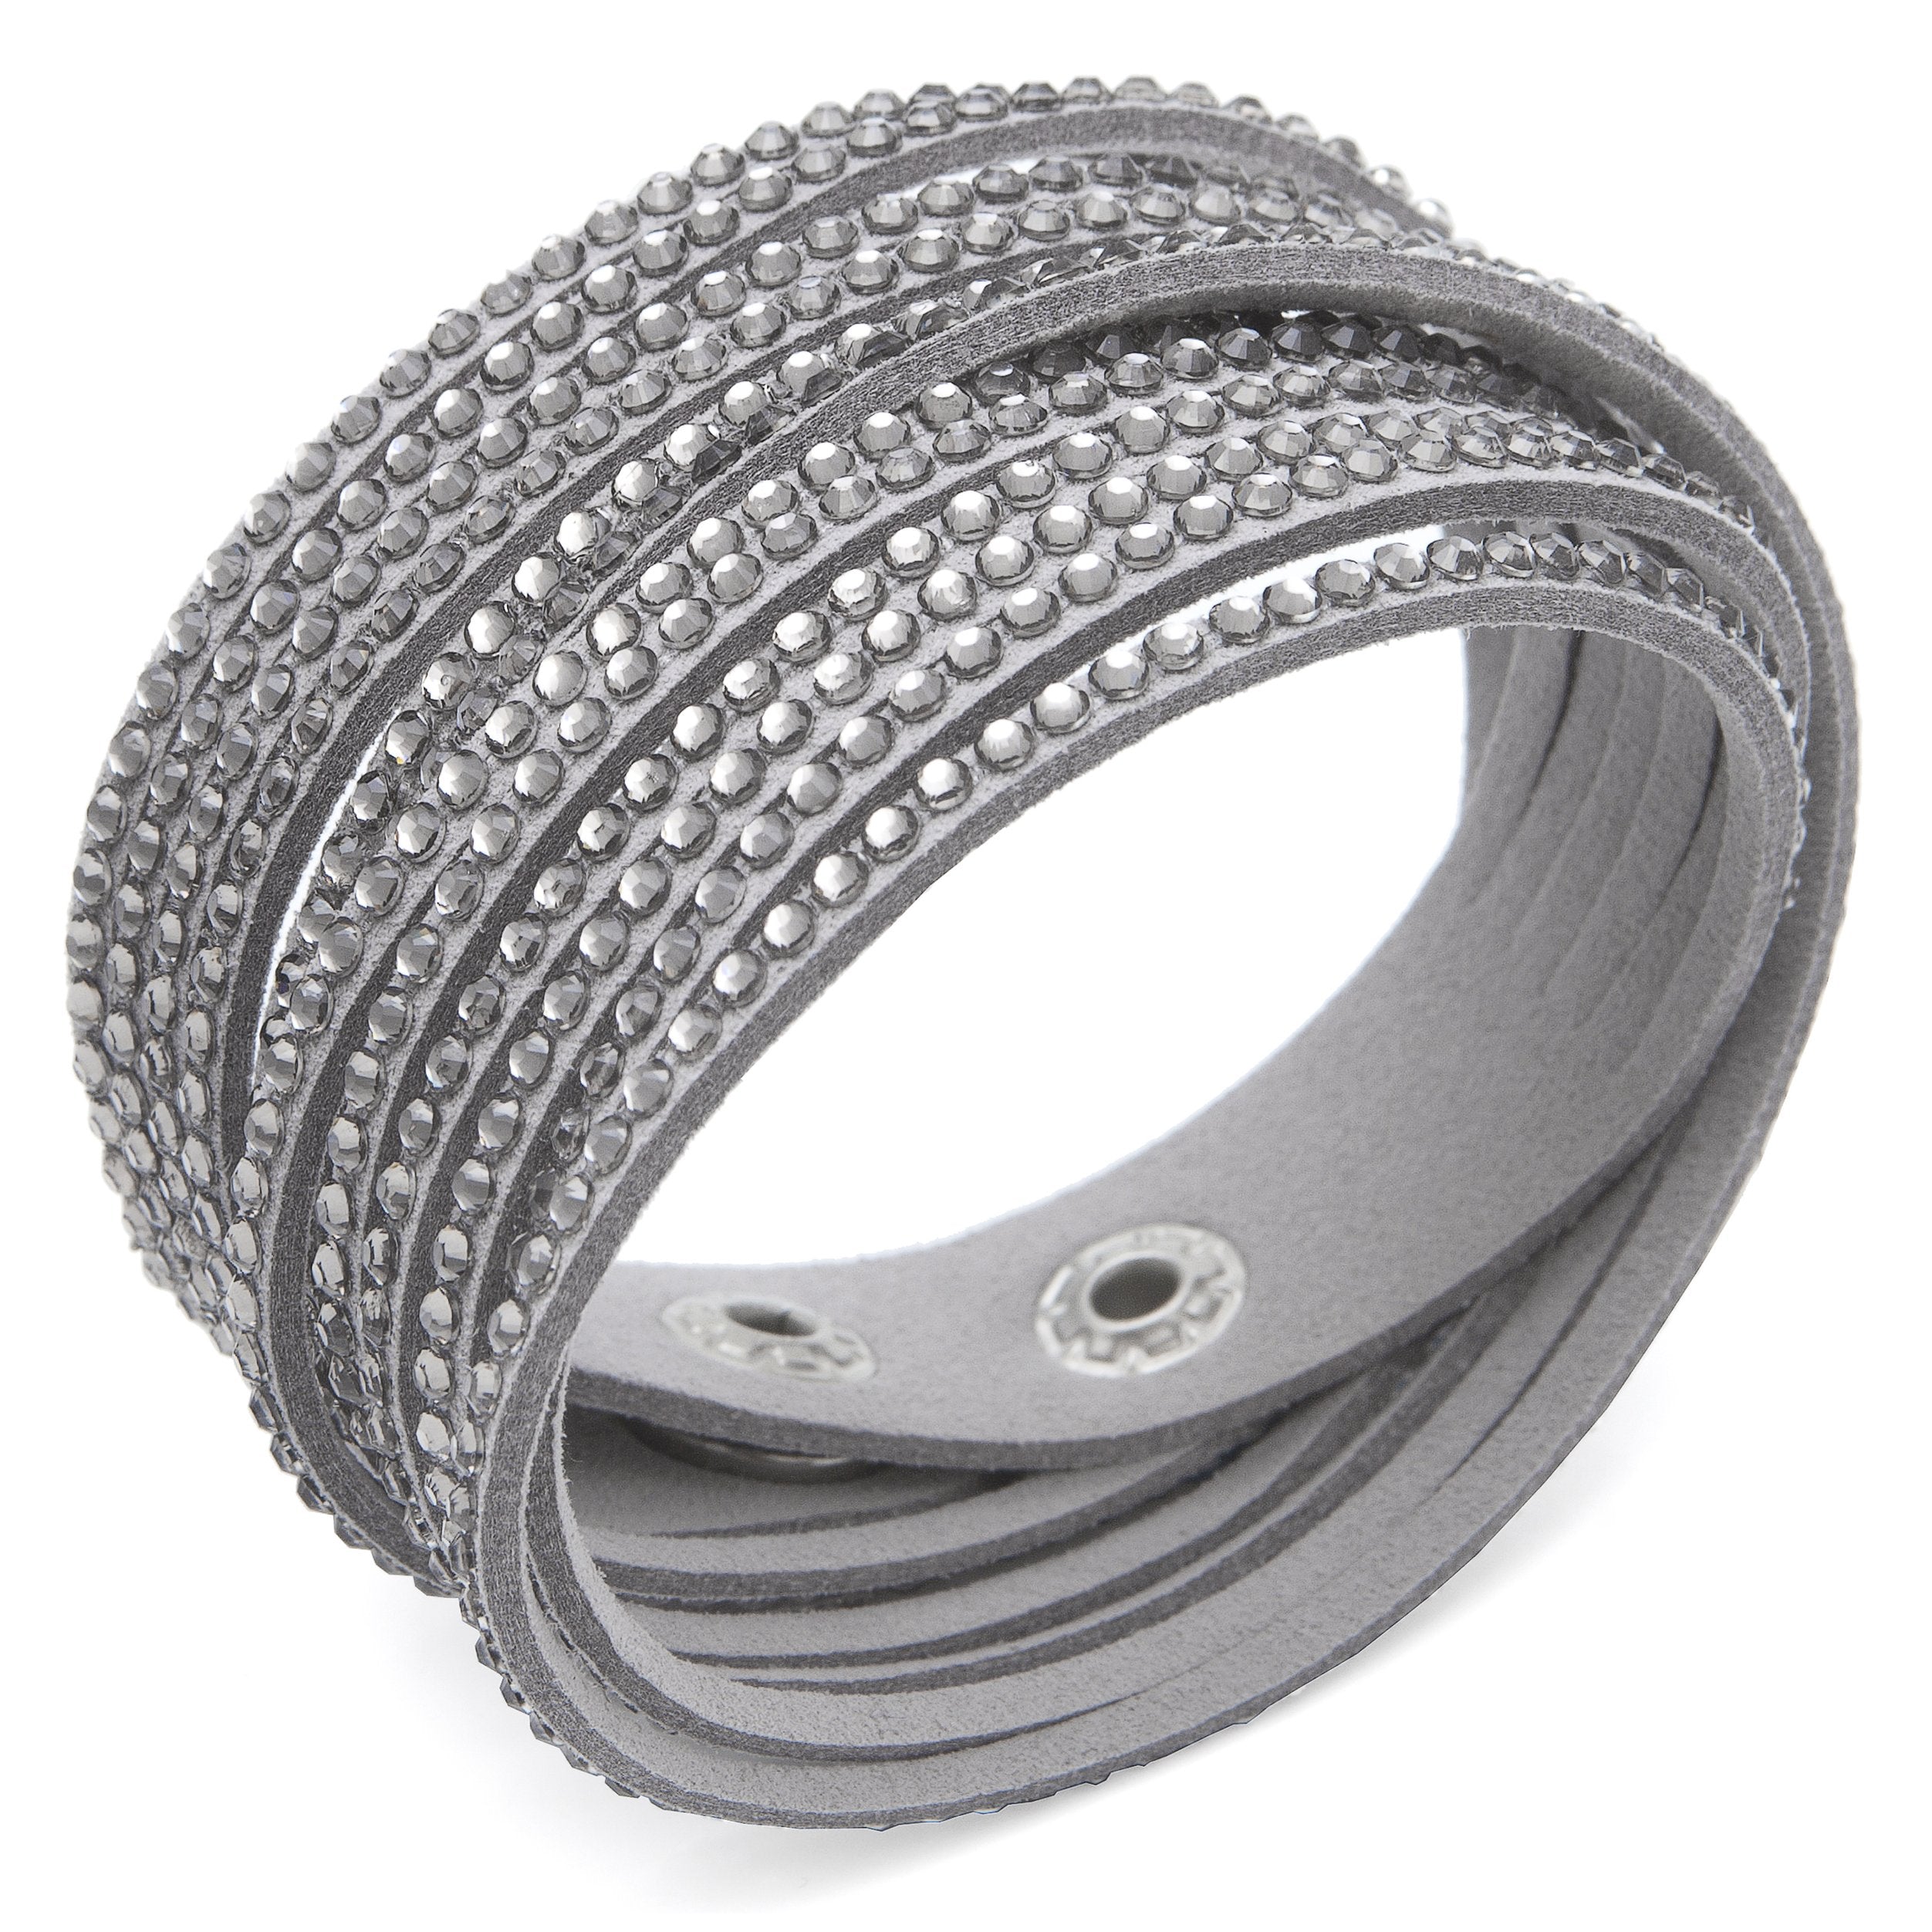 Austrian Crystalized Leather Wrap Bracelet